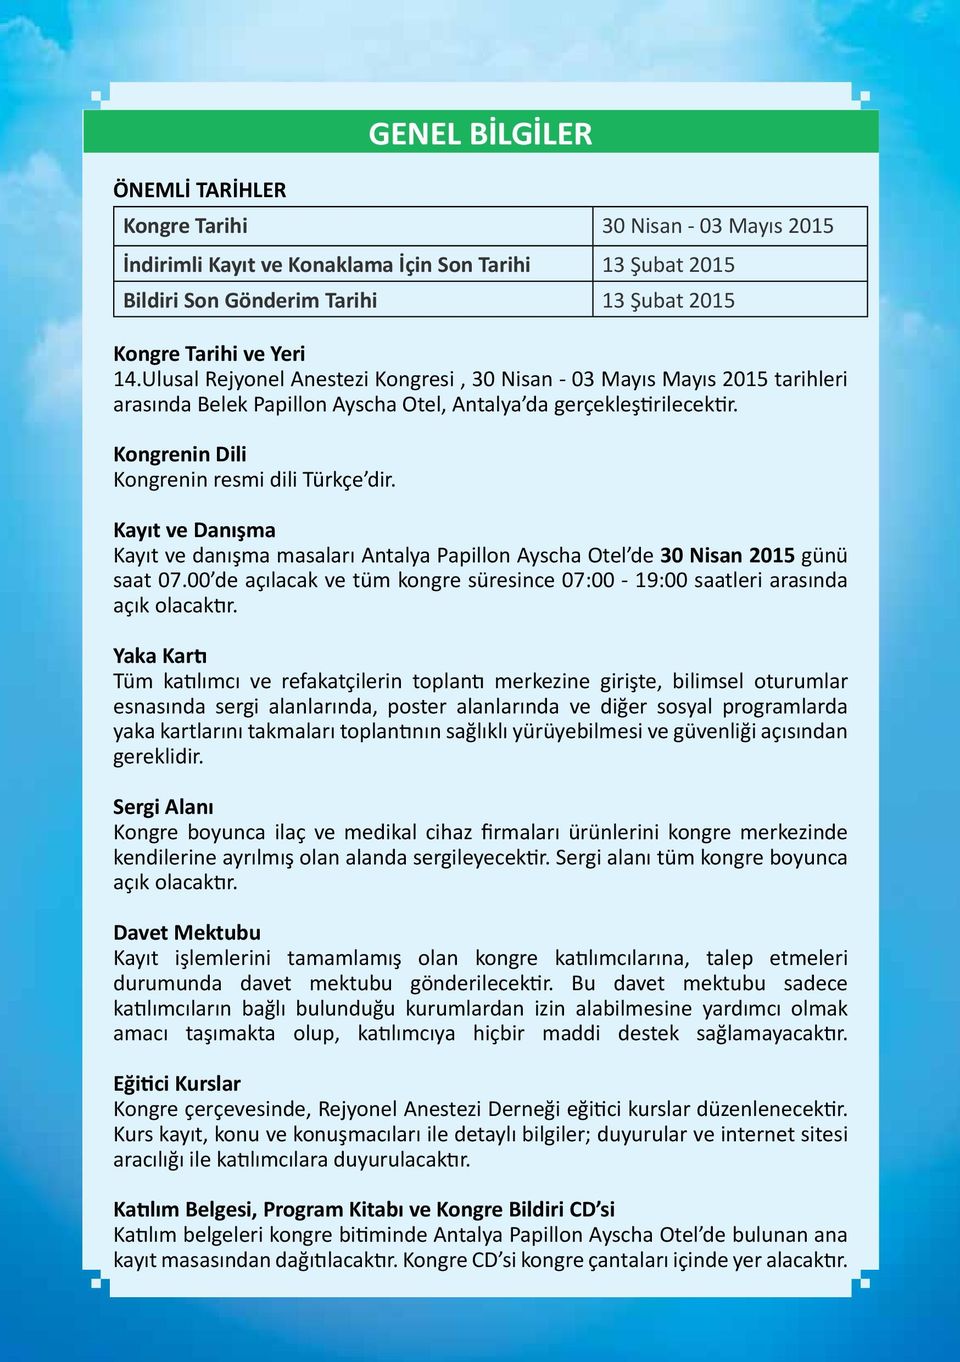 Kayıt ve Danışma Kayıt ve danışma masaları Antalya Papillon Ayscha Otel de 30 Nisan 2015 günü saat 07.00 de açılacak ve tüm kongre süresince 07:00-19:00 saatleri arasında açık olacaktır.